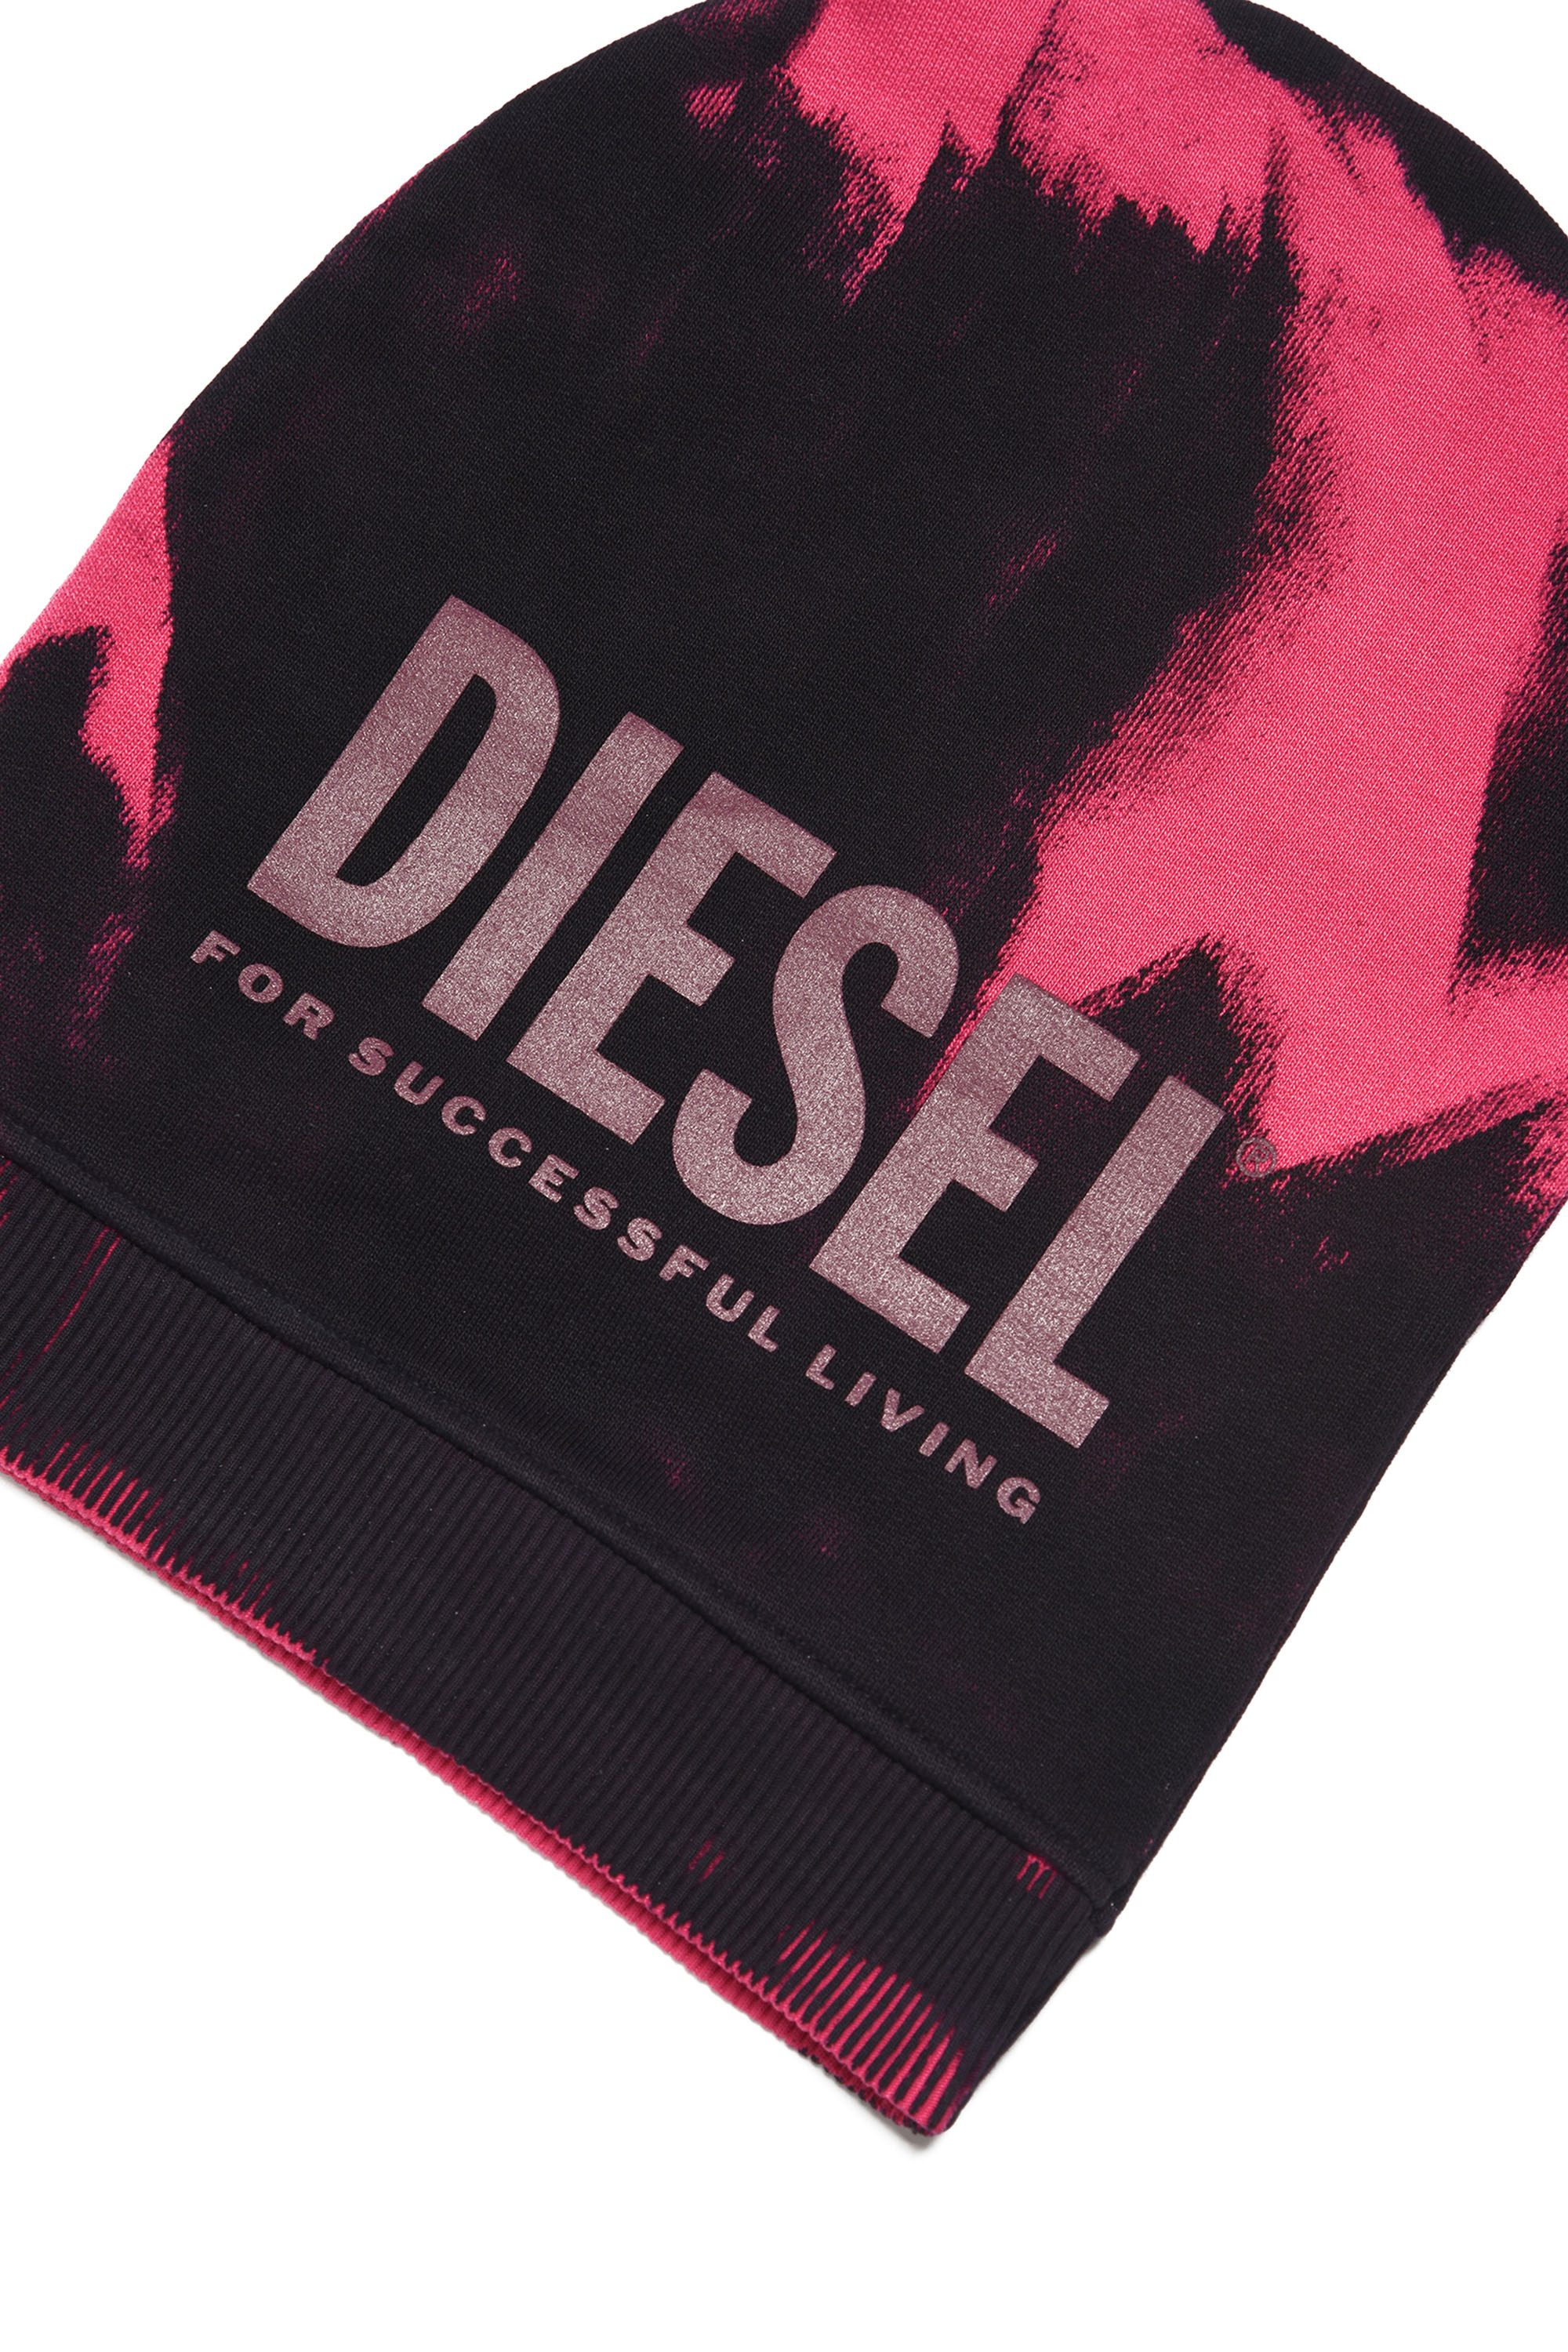 Diesel - FEDYM, Schwarz/Rosa - Image 3